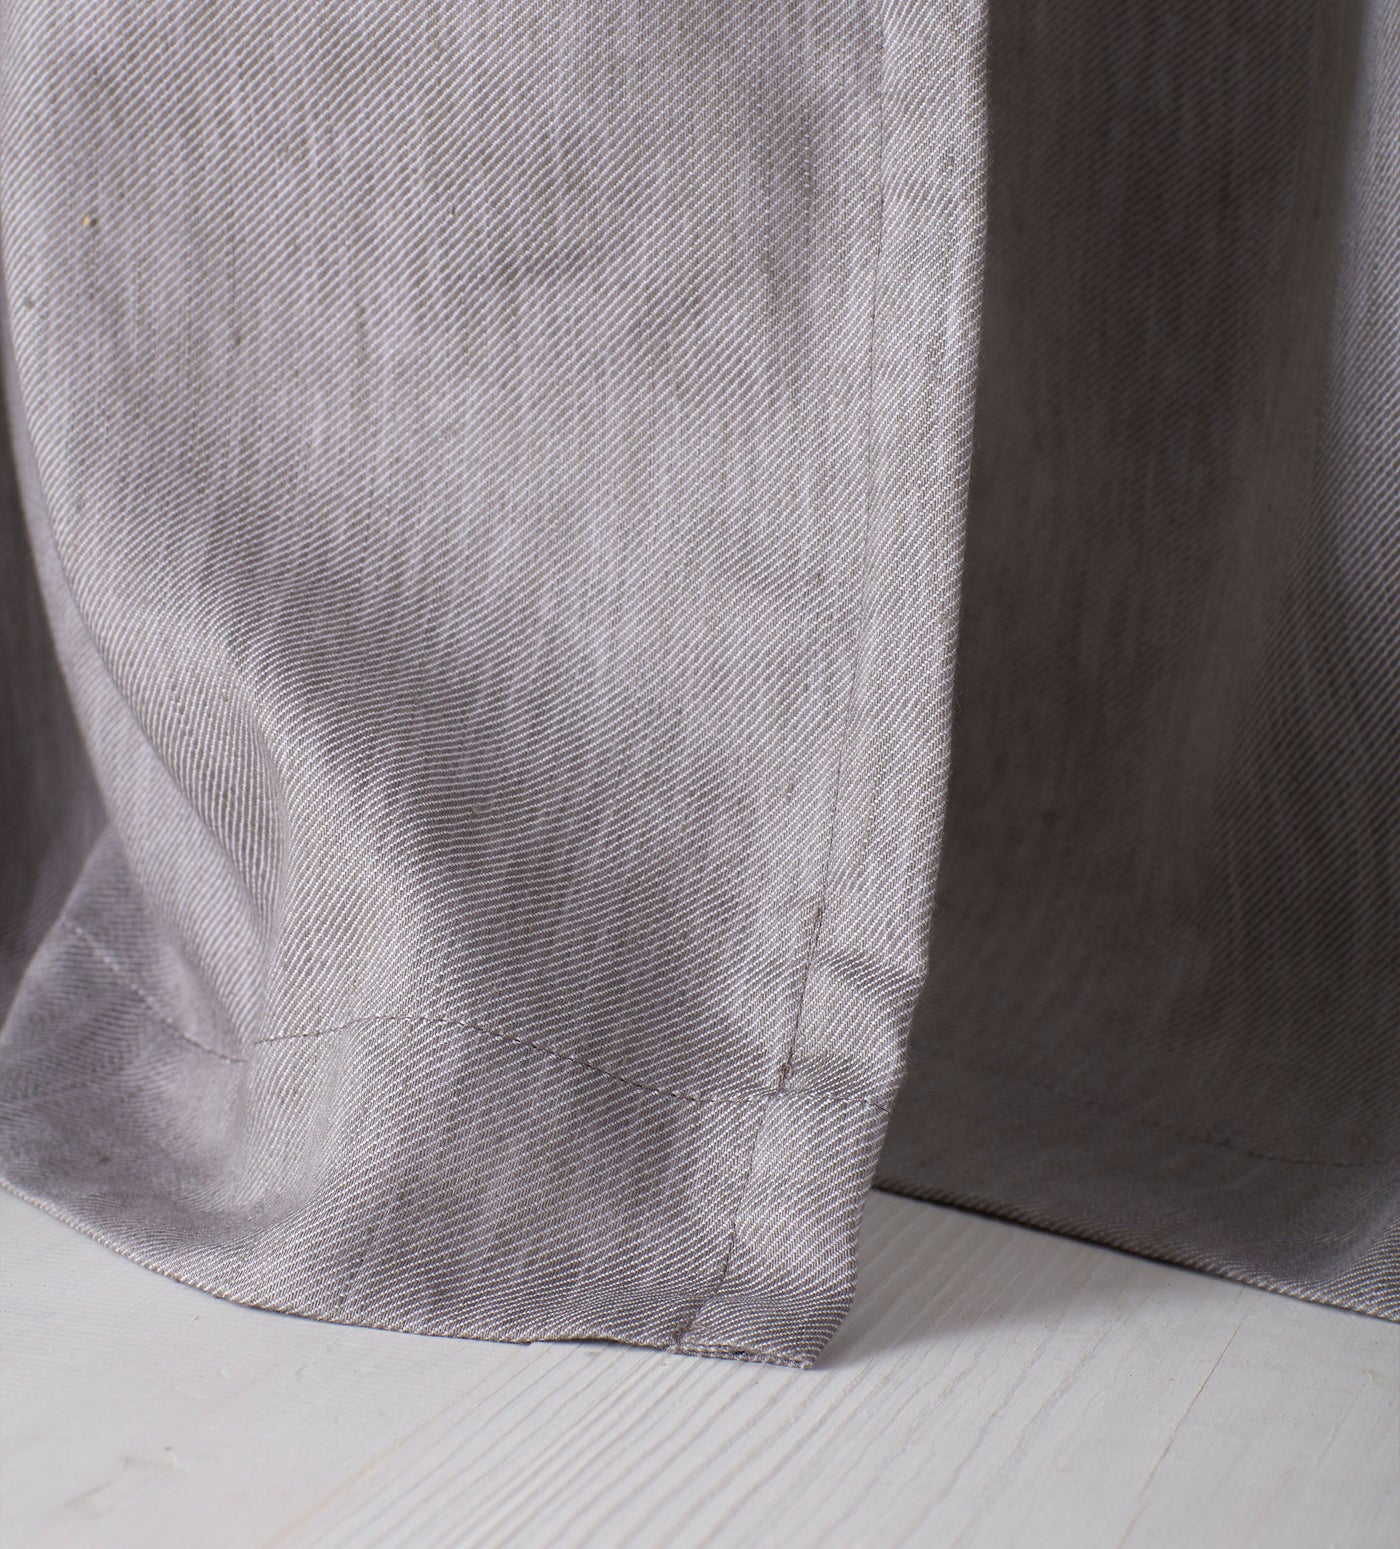 Flint Grey Twill Cotton Linen Blackout Pencil Pleat Curtains (Pair)